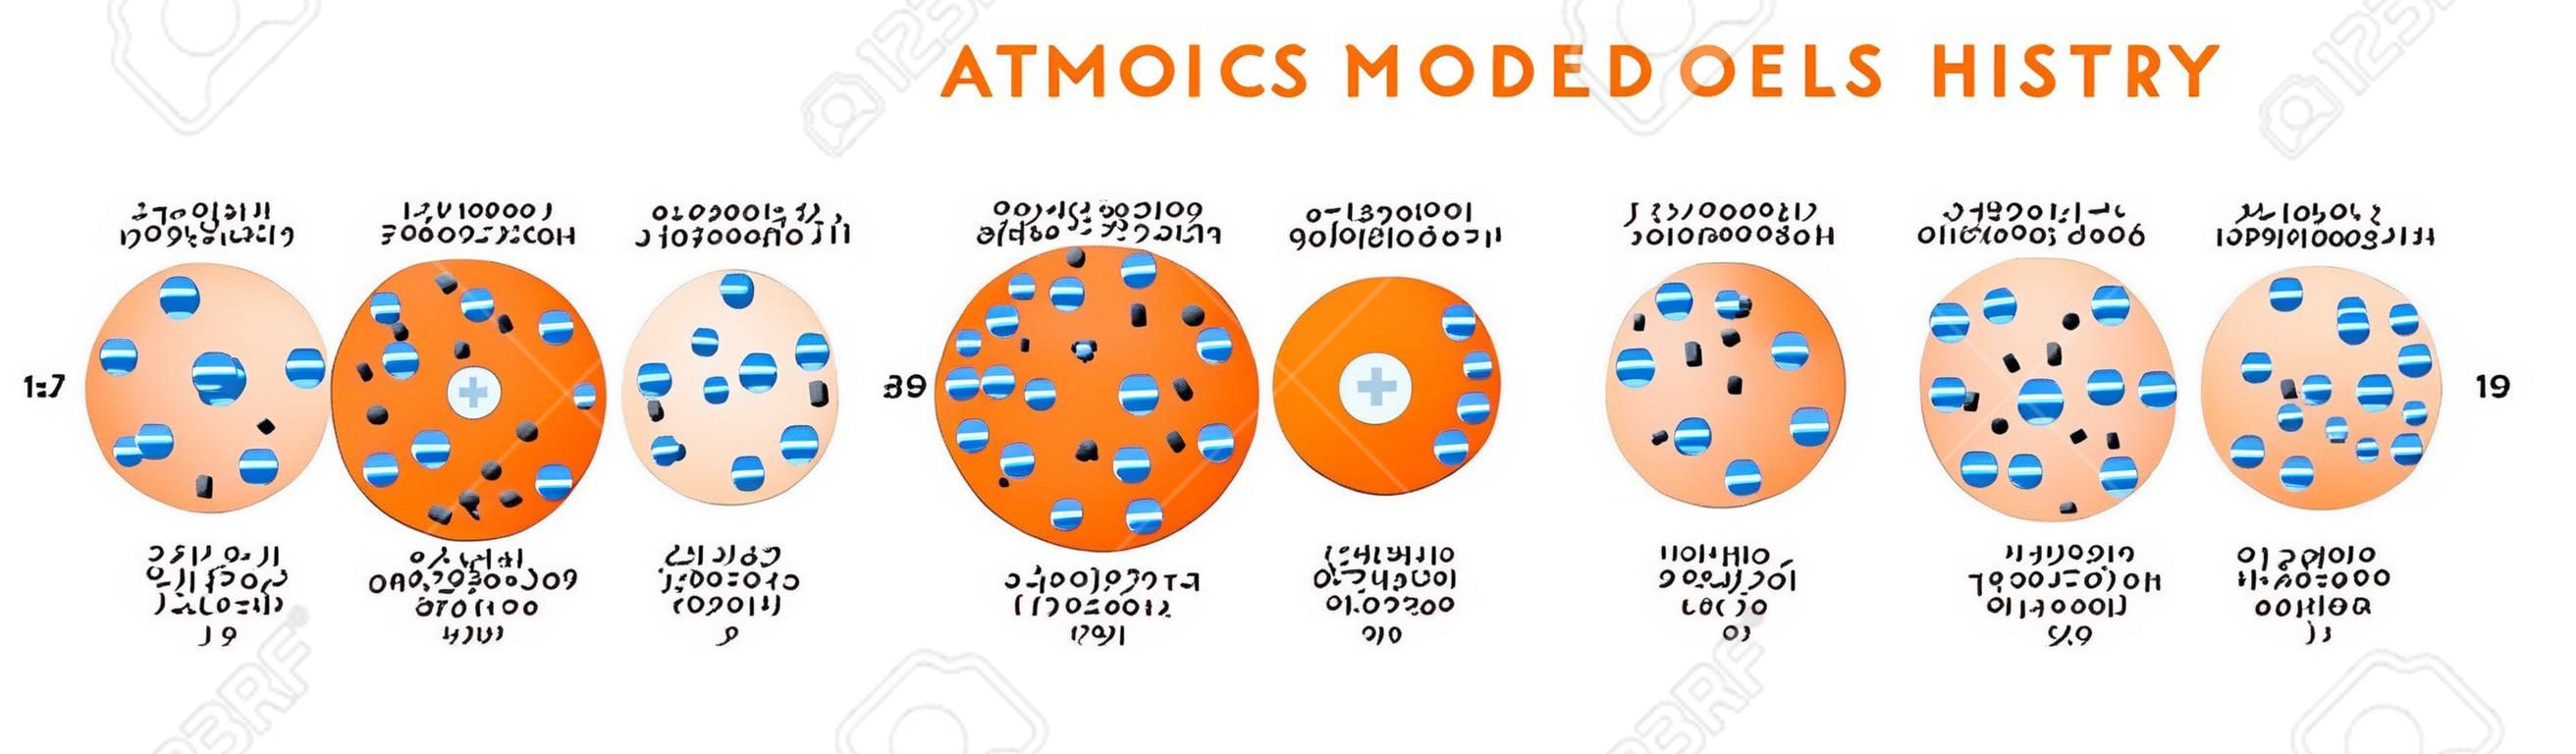 化学科学教育ポスターベクトルのためのデモクリトスダルトントムソンラザフォードボーアシュレディンガー原子構造を含む原子モデルの歴史インフォグラフィック図